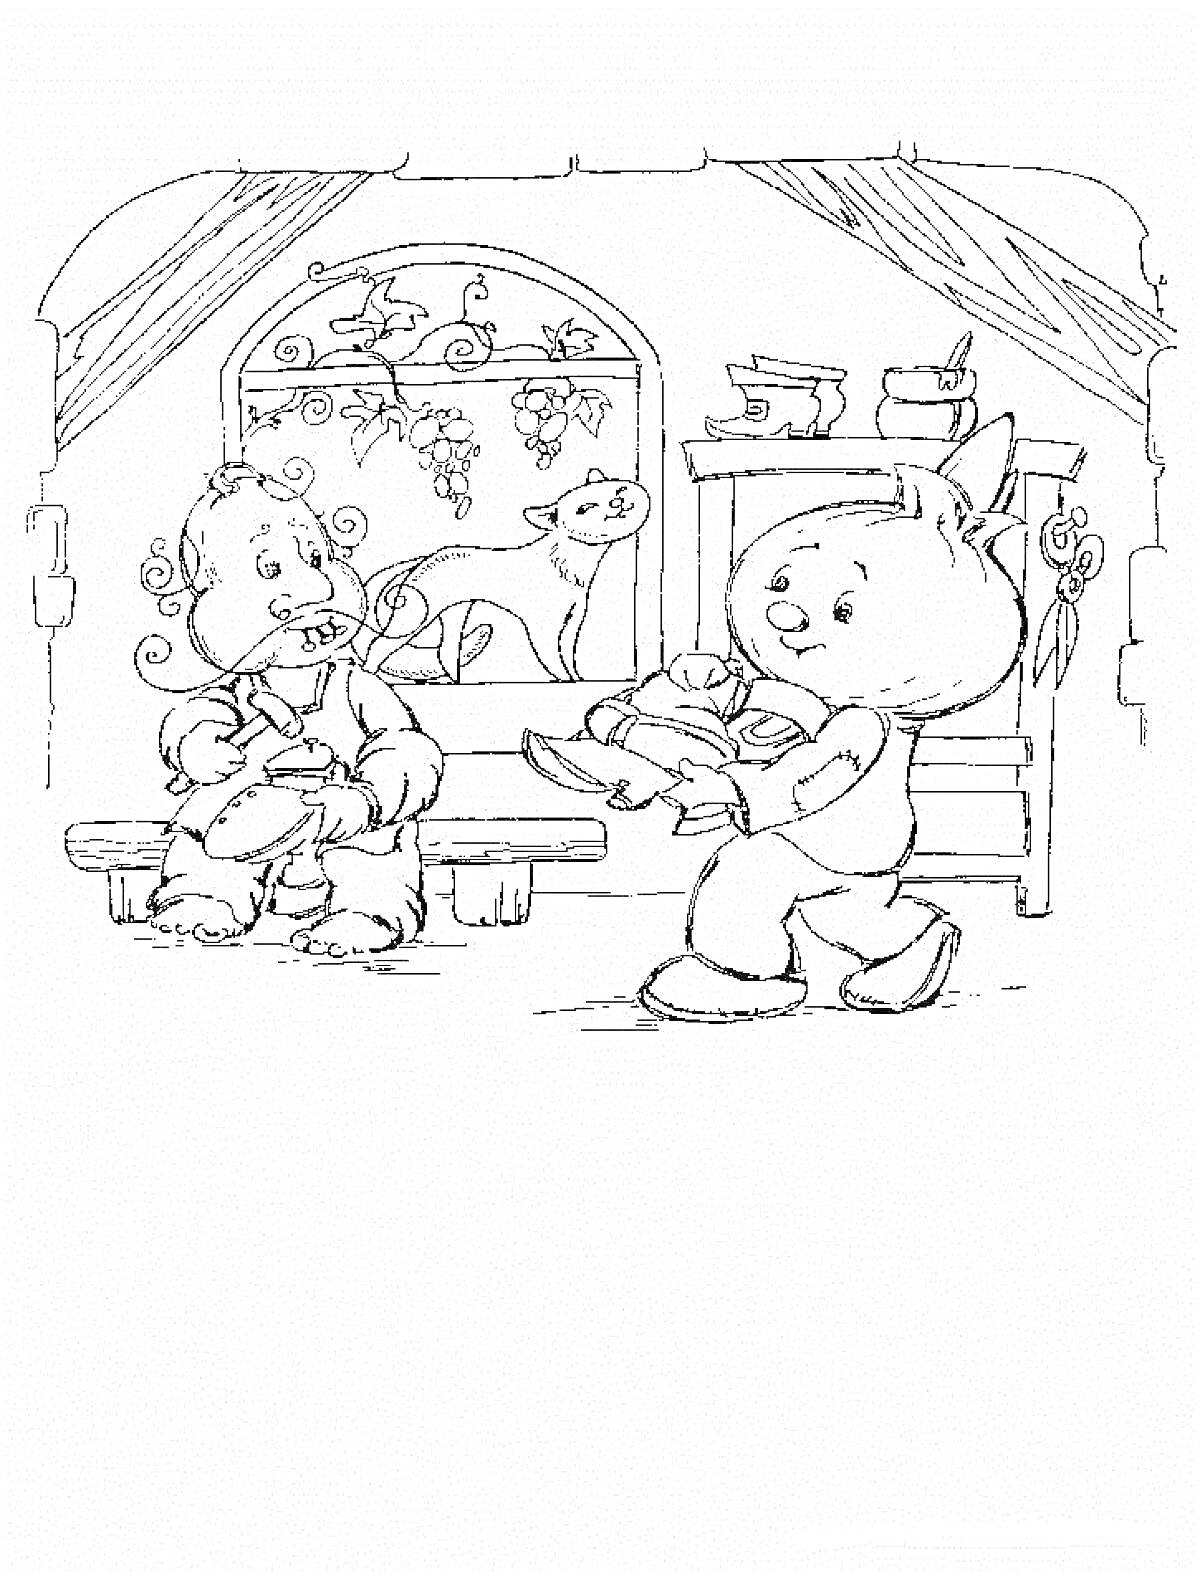 Раскраска Чиполлино и друг в комнате с котом на подоконнике, гравюрой в деревянной раме и шкафом с кастрюлей на верхней полке